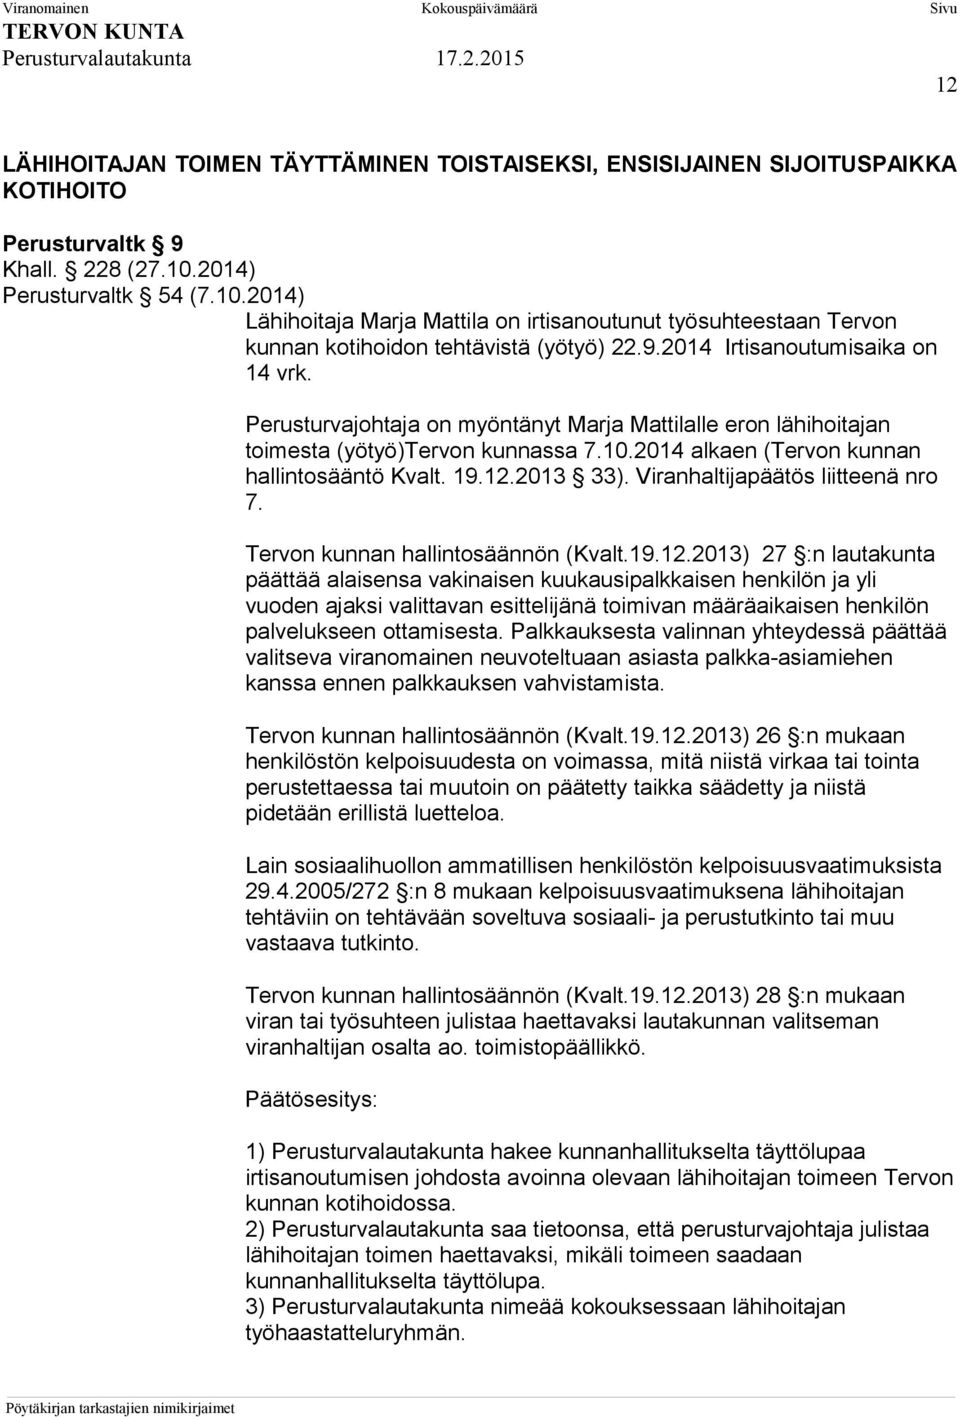 Perusturvajohtaja on myöntänyt Marja Mattilalle eron lähihoitajan toimesta (yötyö)tervon kunnassa 7.10.2014 alkaen (Tervon kunnan hallintosääntö Kvalt. 19.12.2013 33).